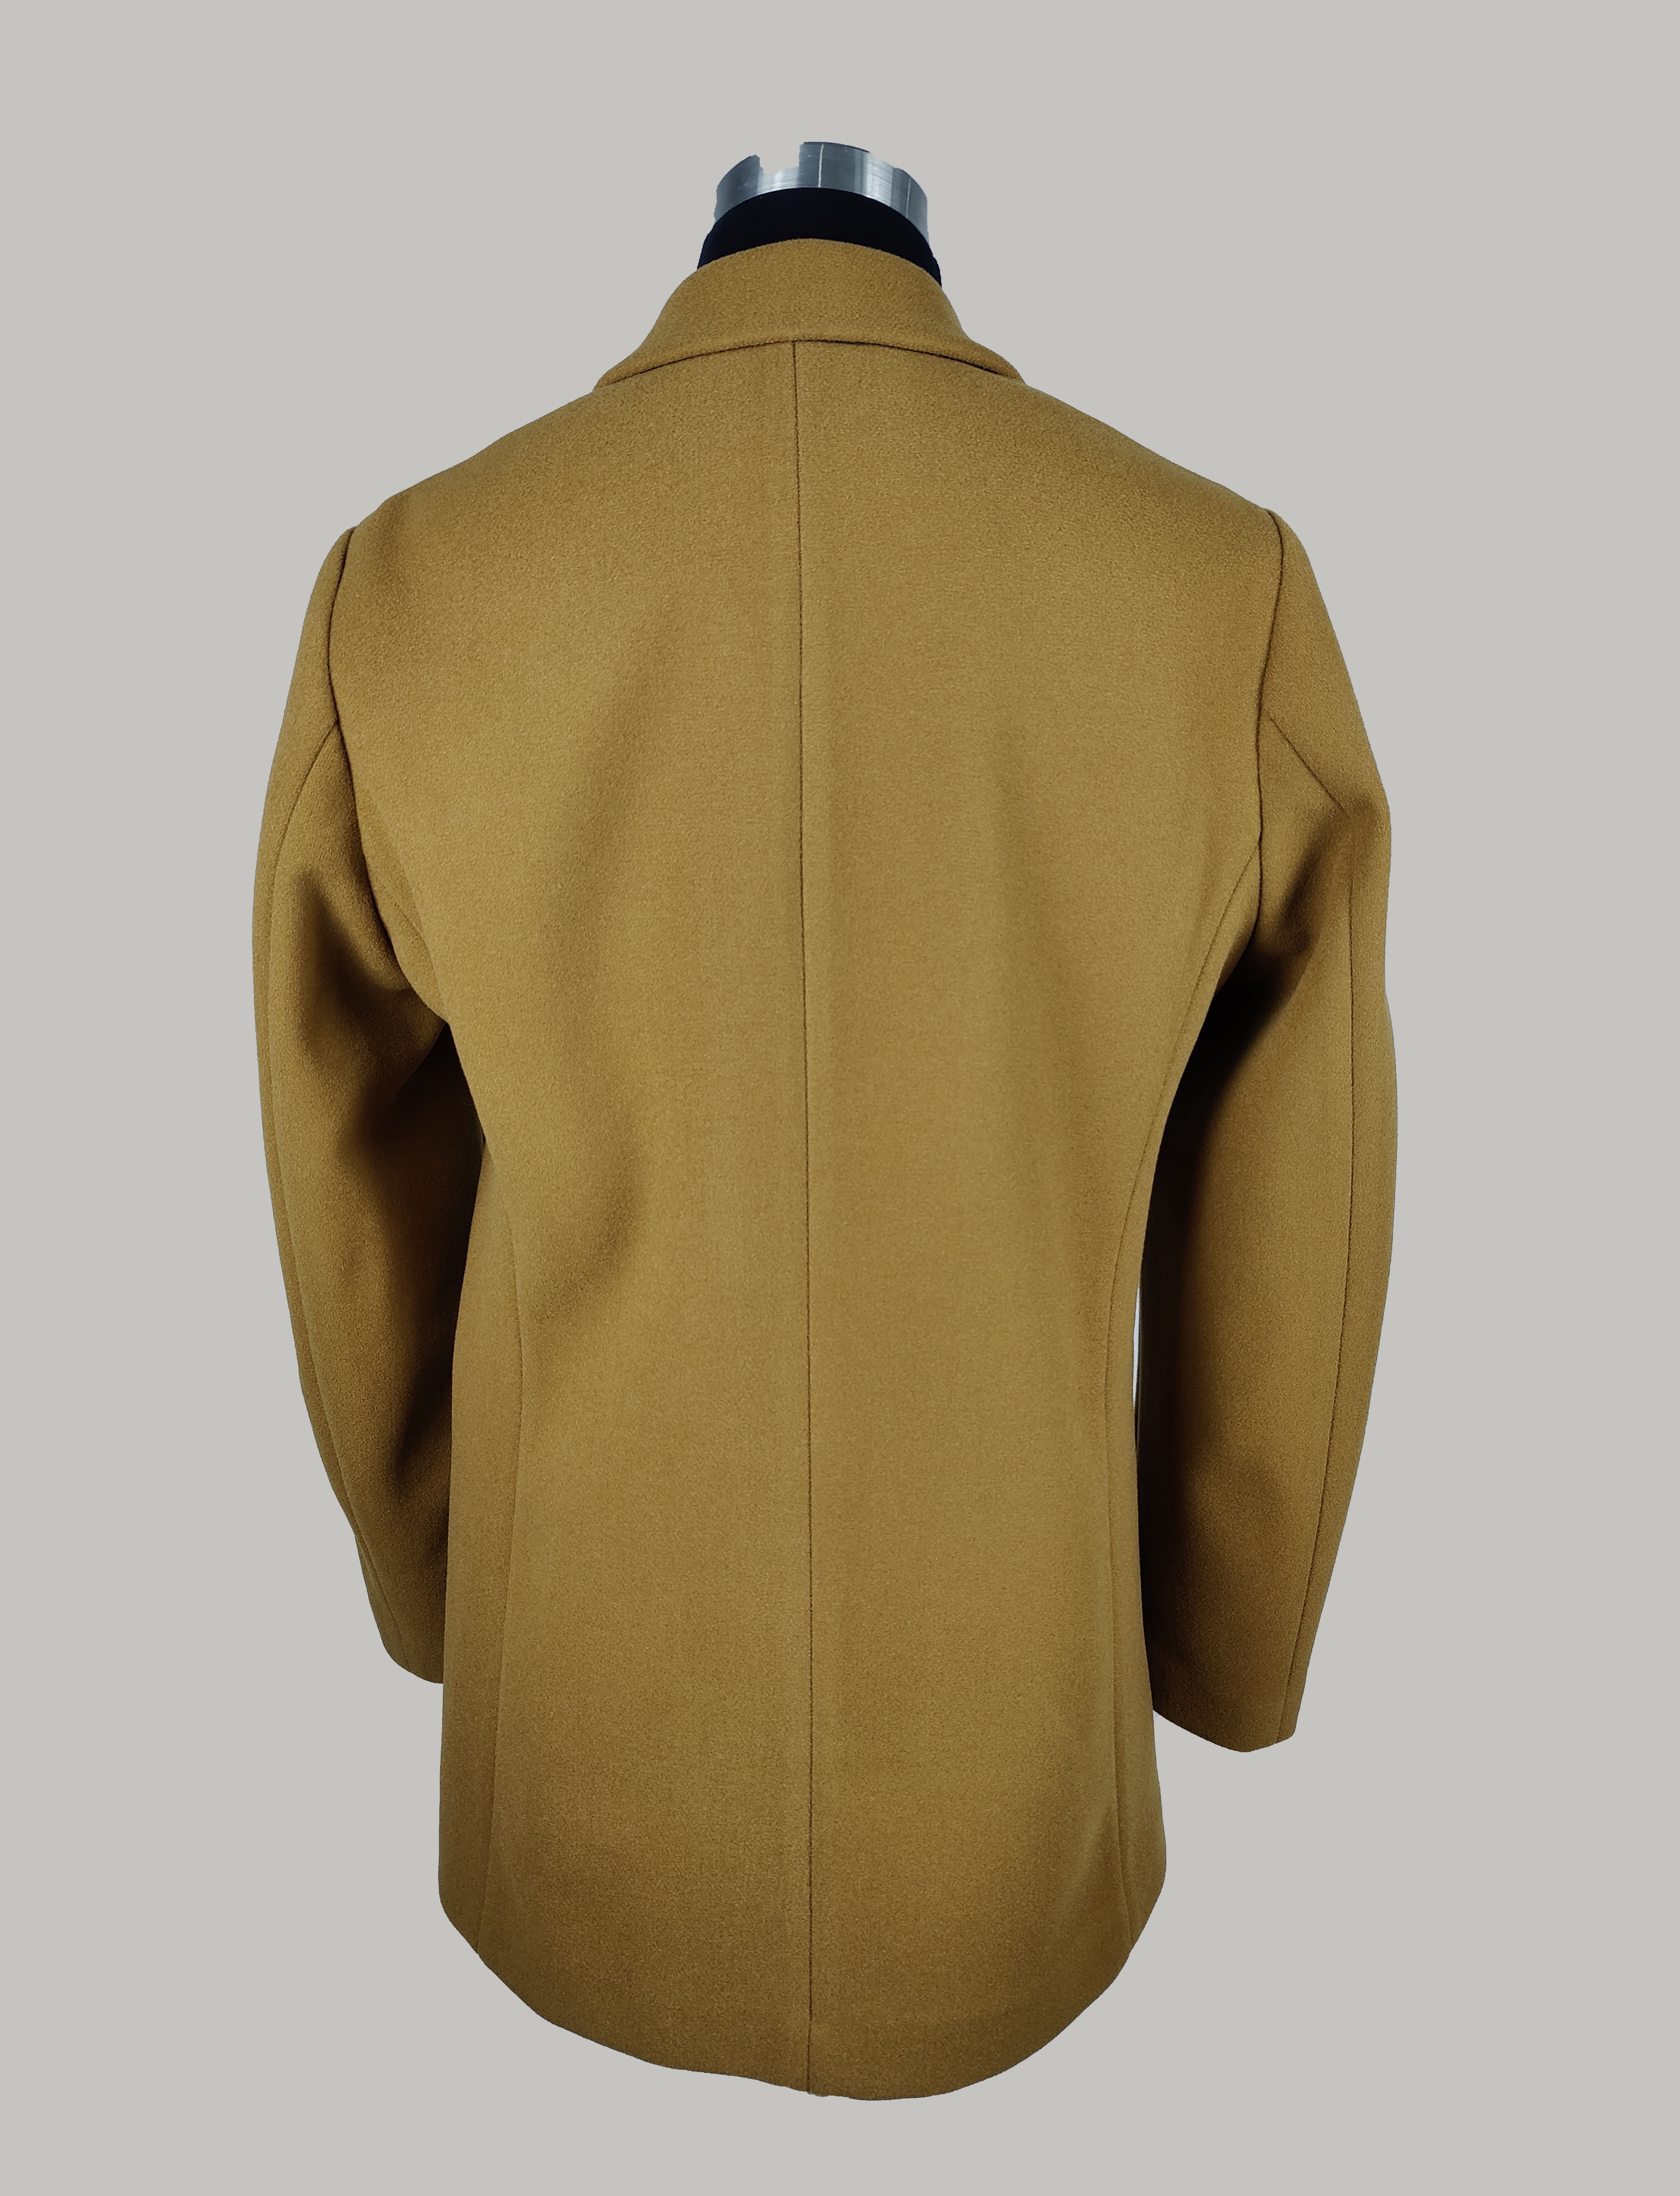 Fashion Mens Camel Color Melton Suit Jacket Men Coat Blazer